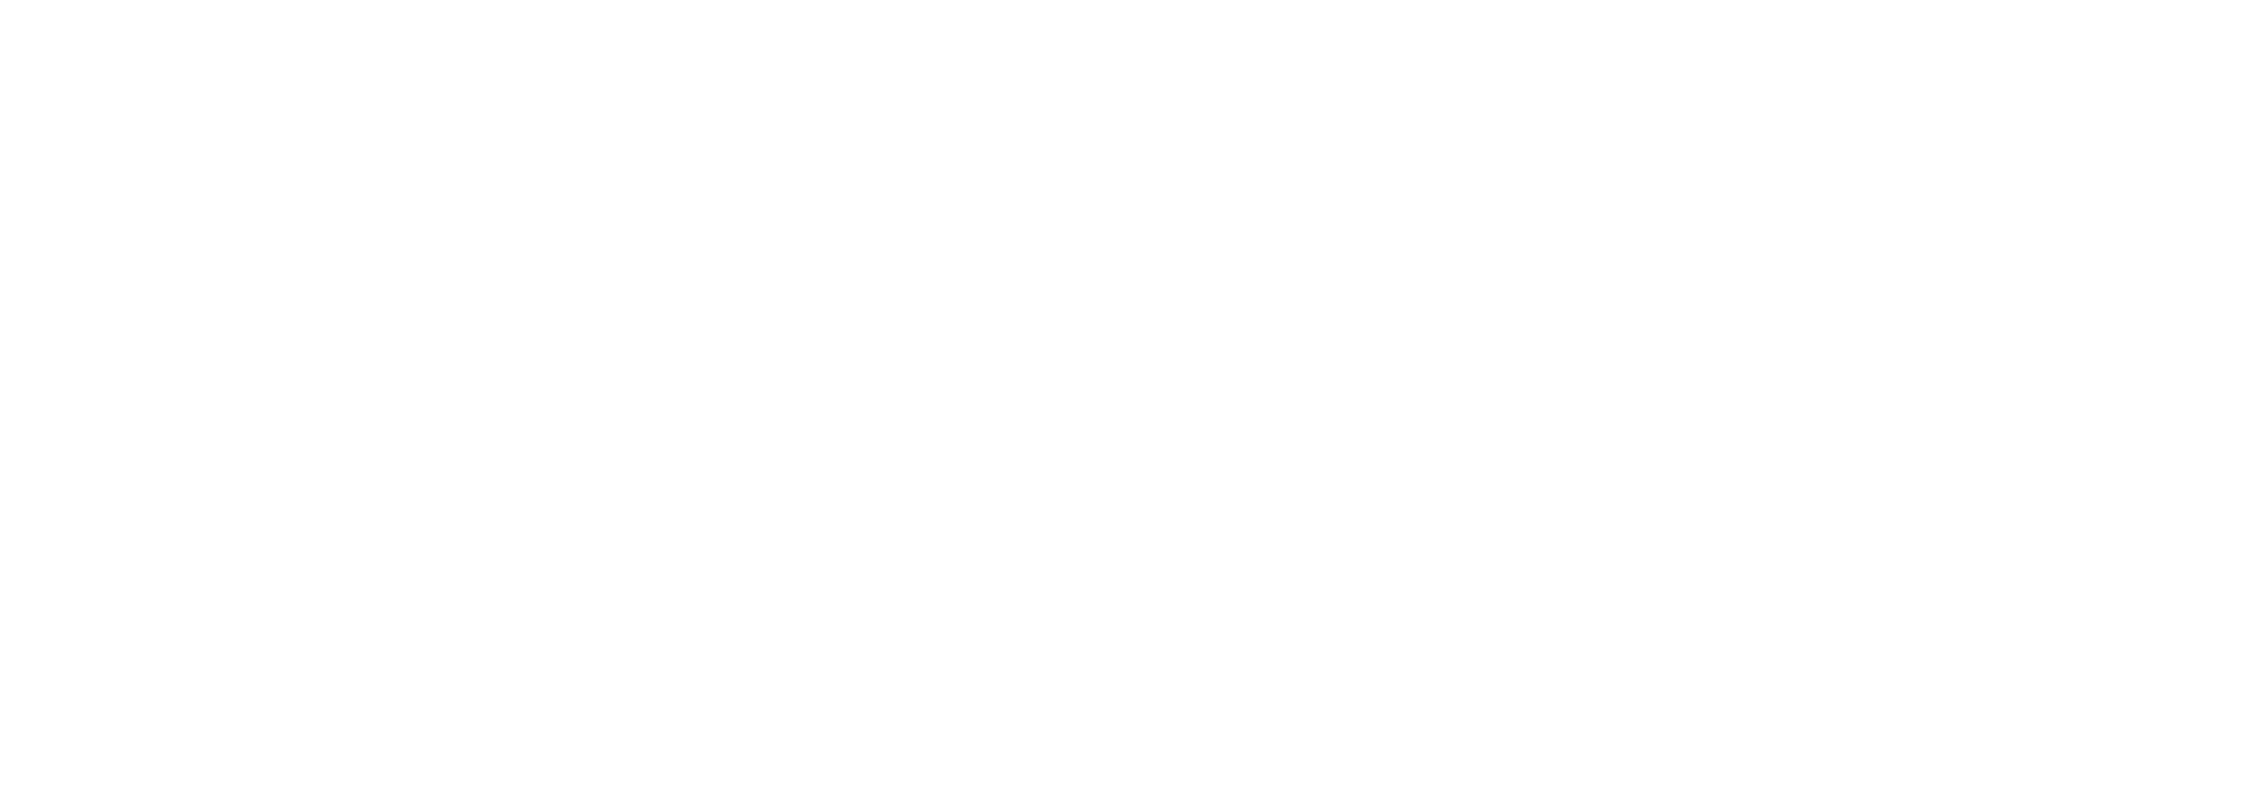 Snow Cream Mountain Logo - British Ski School in Morzine Mountain Snowsports